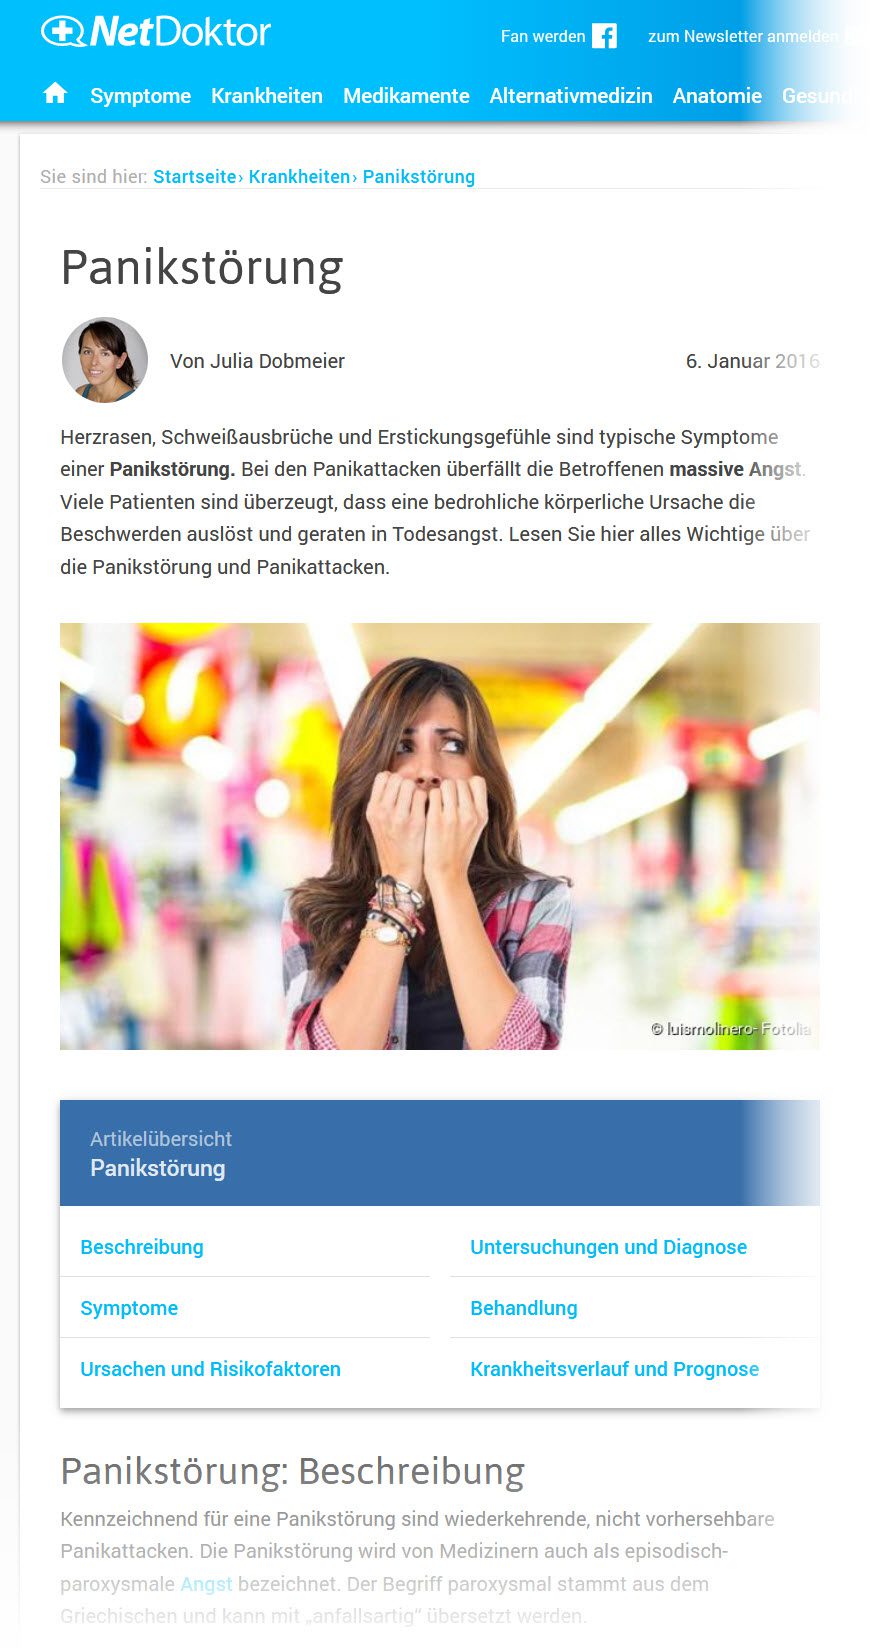 Panikstörung Ursachen, Symptome etc. - gut erklärt bei Netdoktor (Screenshot https://www.netdoktor.de/krankheiten/panikstoerung/ am 28.12.2017)